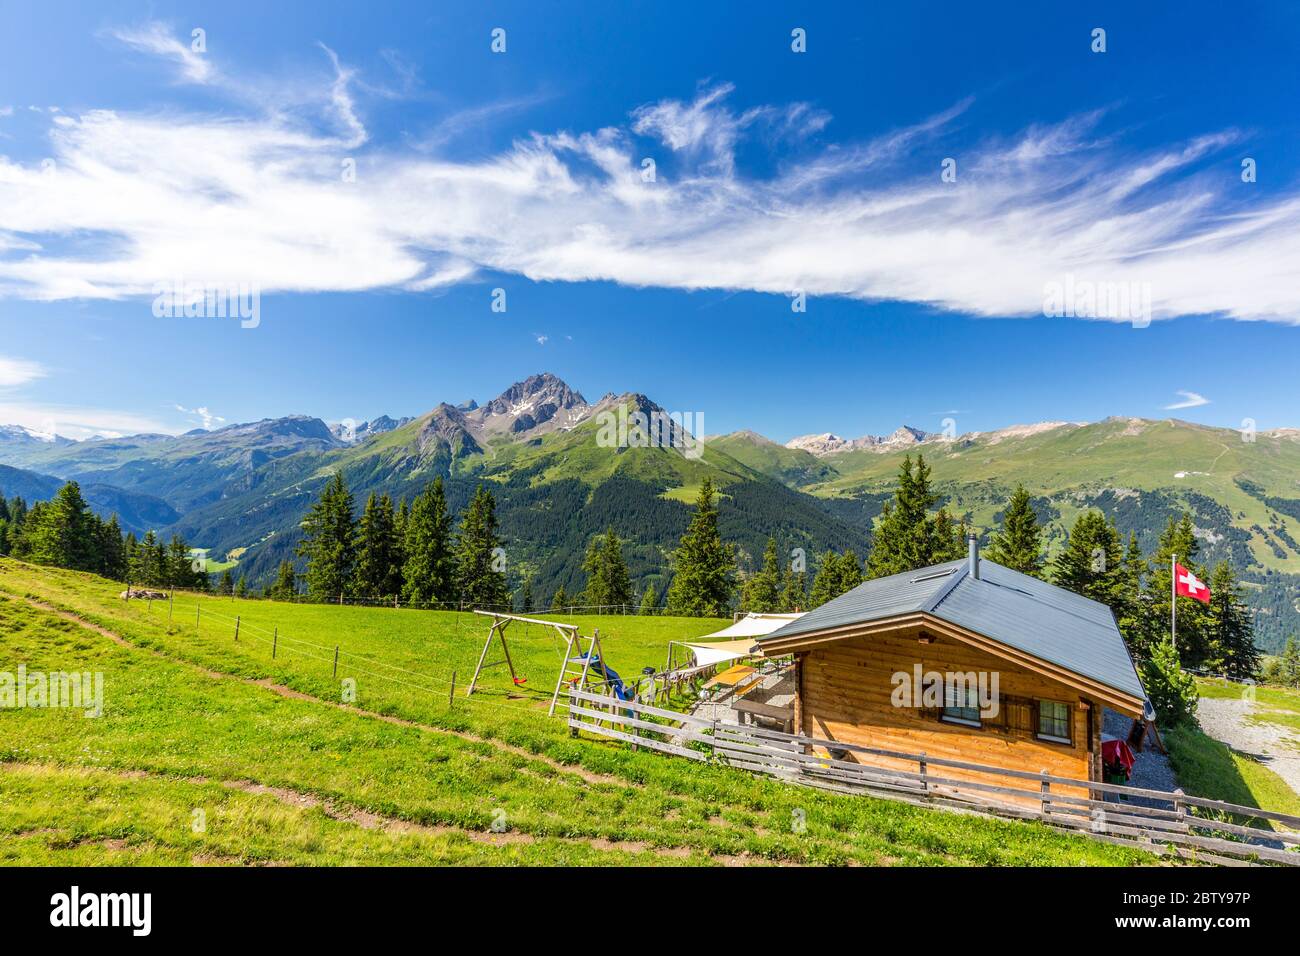 Berghütte mit Schweizer Flagge unter atemberaubenden Wolken, Urses, Surselva, Graubünden, Schweiz, Europa Stockfoto